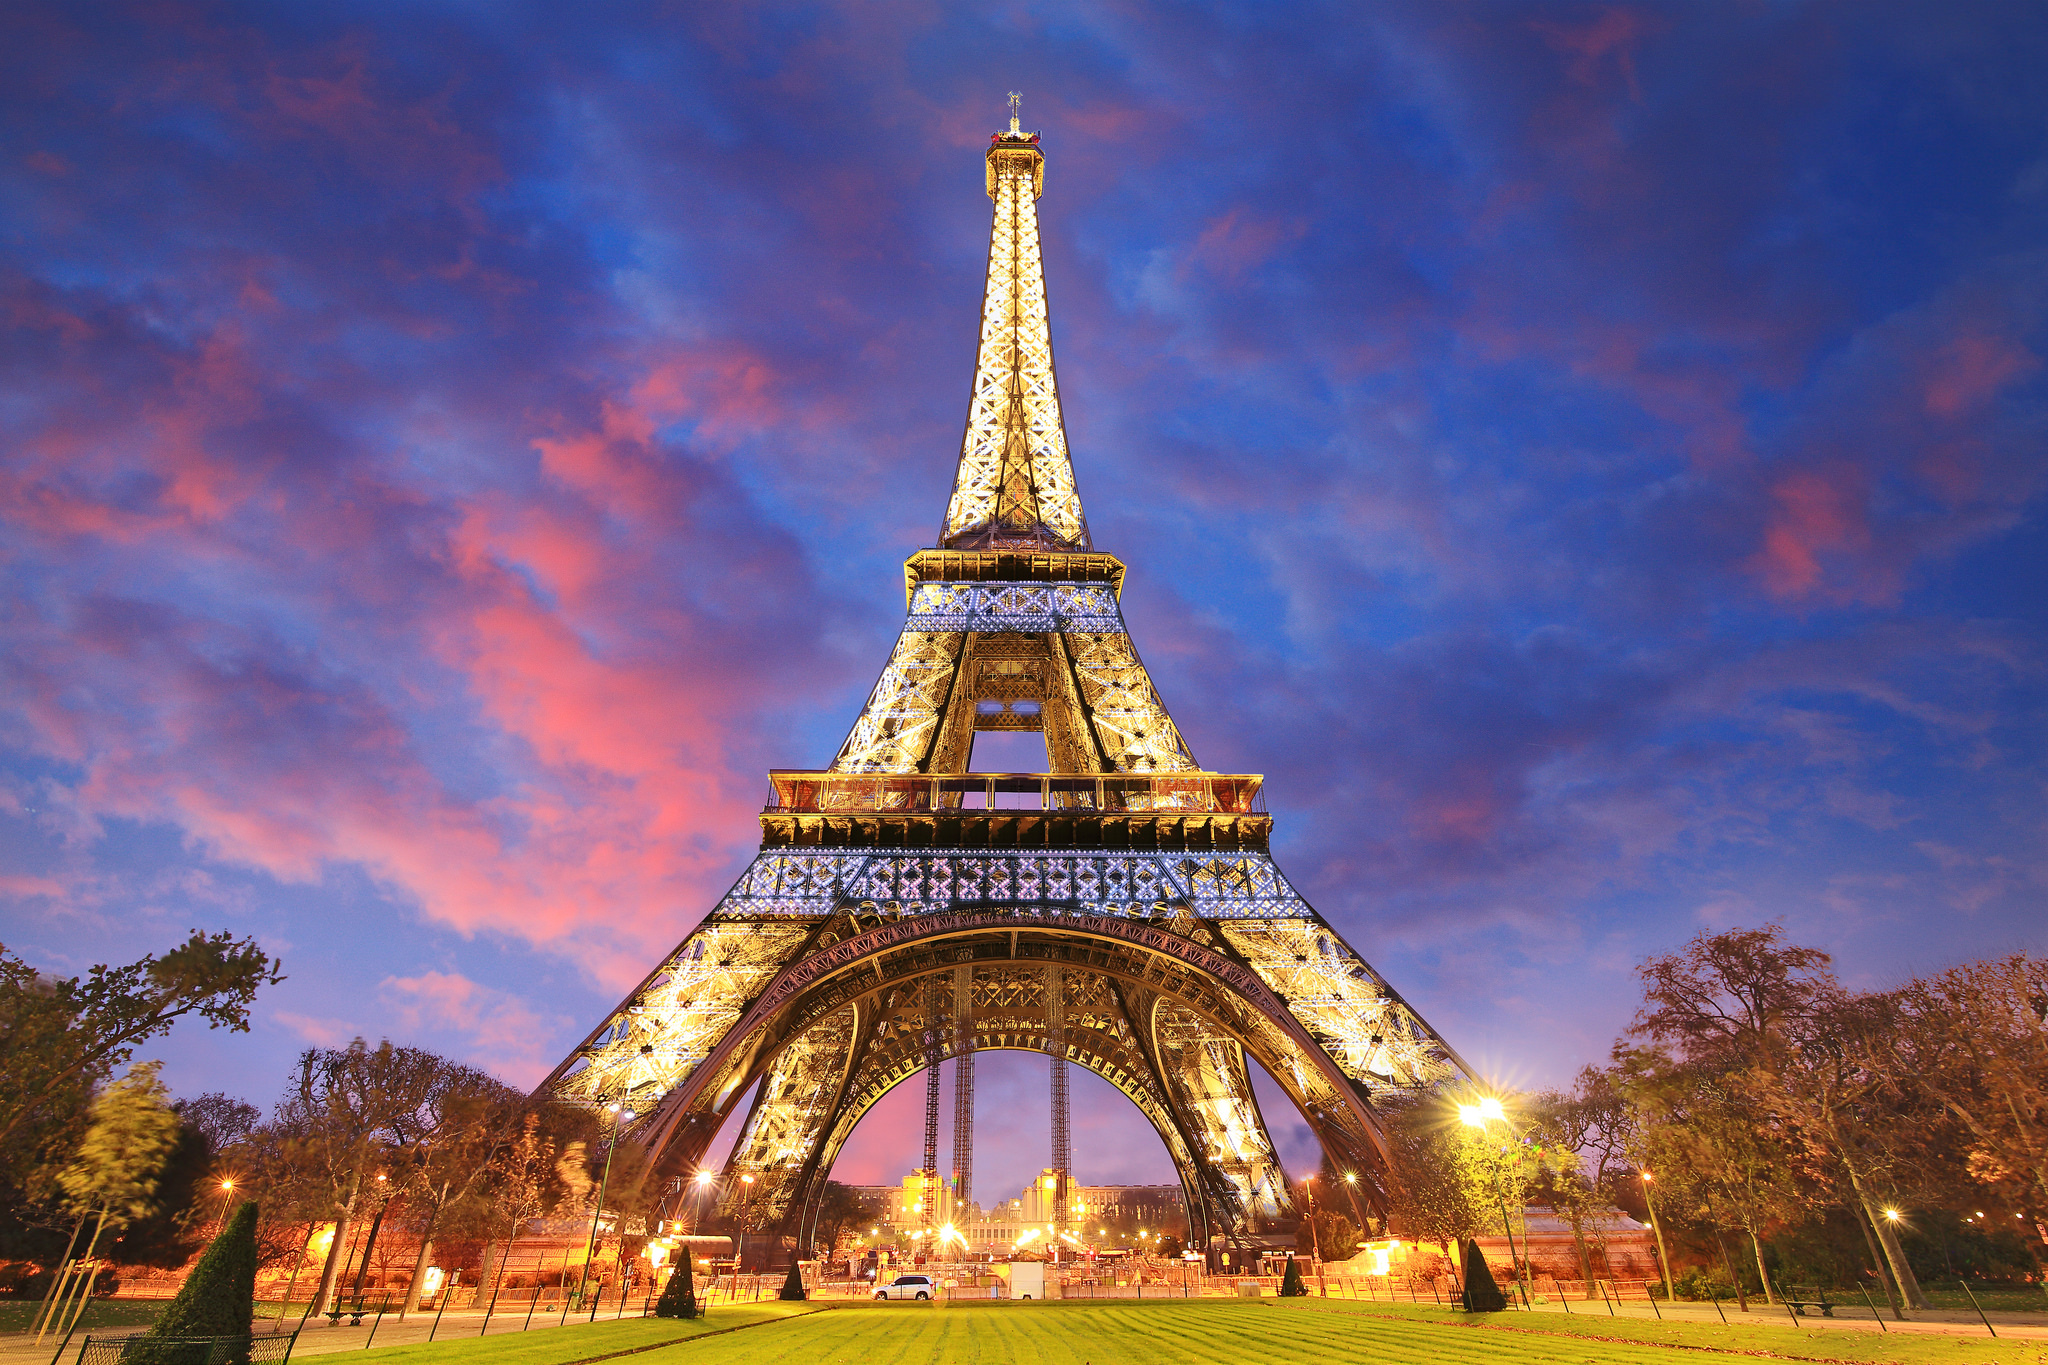 Tổng Hợp 50+ Hình Ảnh Tháp Eiffel Đẹp, Lộng Lấy, Hùng Vĩ Nhất 1